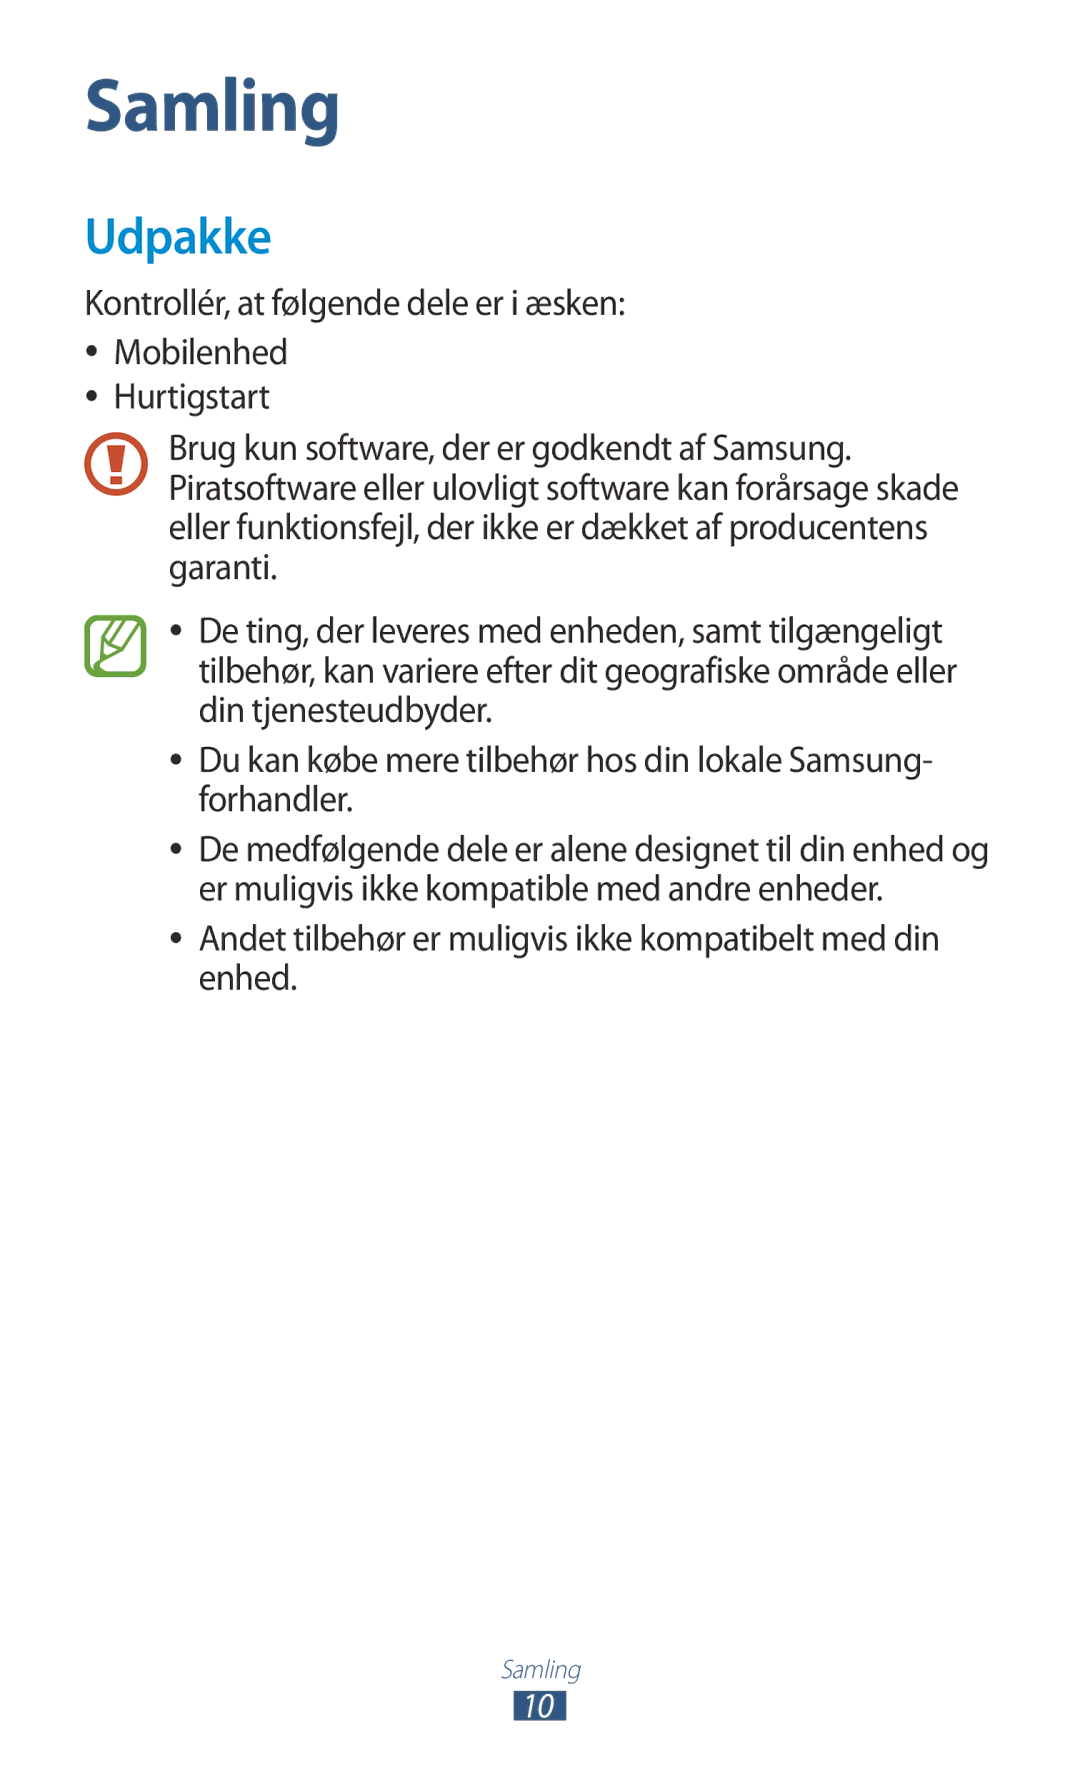 Samsung GT-P3100ZWANEE, GT-P3100TSANEE, GT-P3100GRANEE Udpakke, Andet tilbehør er muligvis ikke kompatibelt med din enhed 